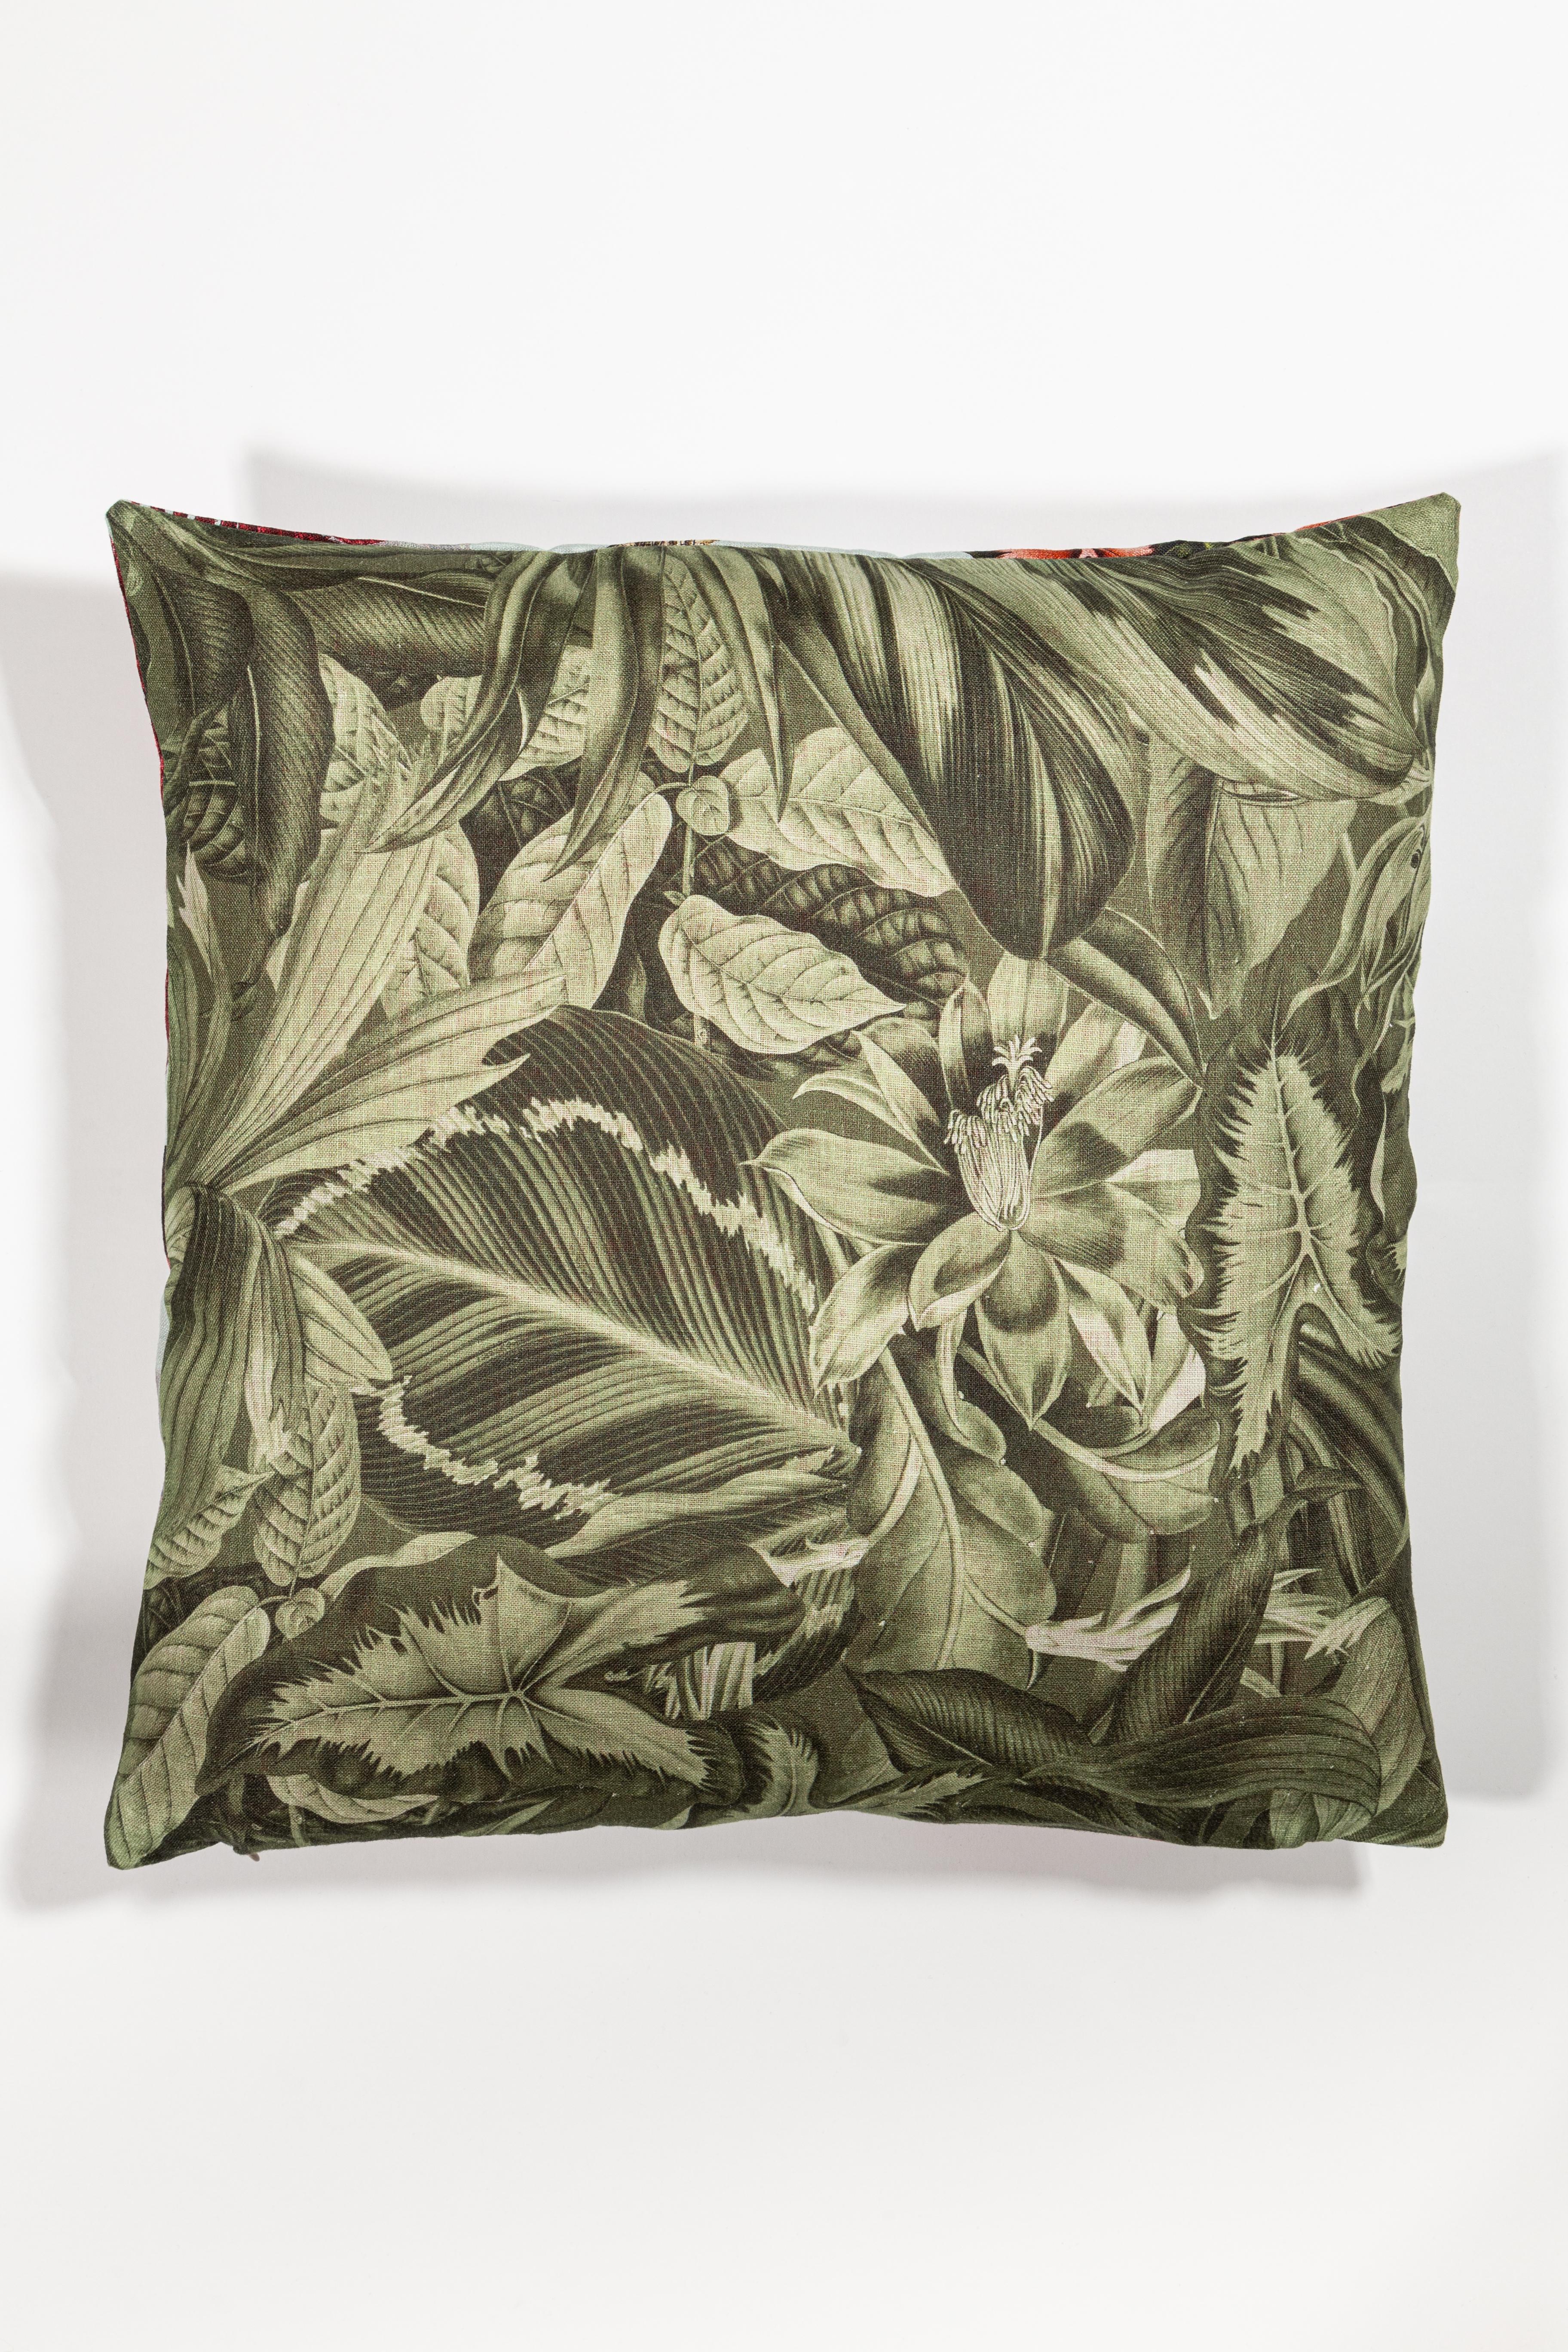 Animalia pillows est un ensemble de coussins qui raconte l'histoire d'animaux sauvages à la recherche de l'amour au printemps. Chaque oreiller présente deux animaux de la même espèce dans une explosion de fleurs et de végétation. Le dos du coussin